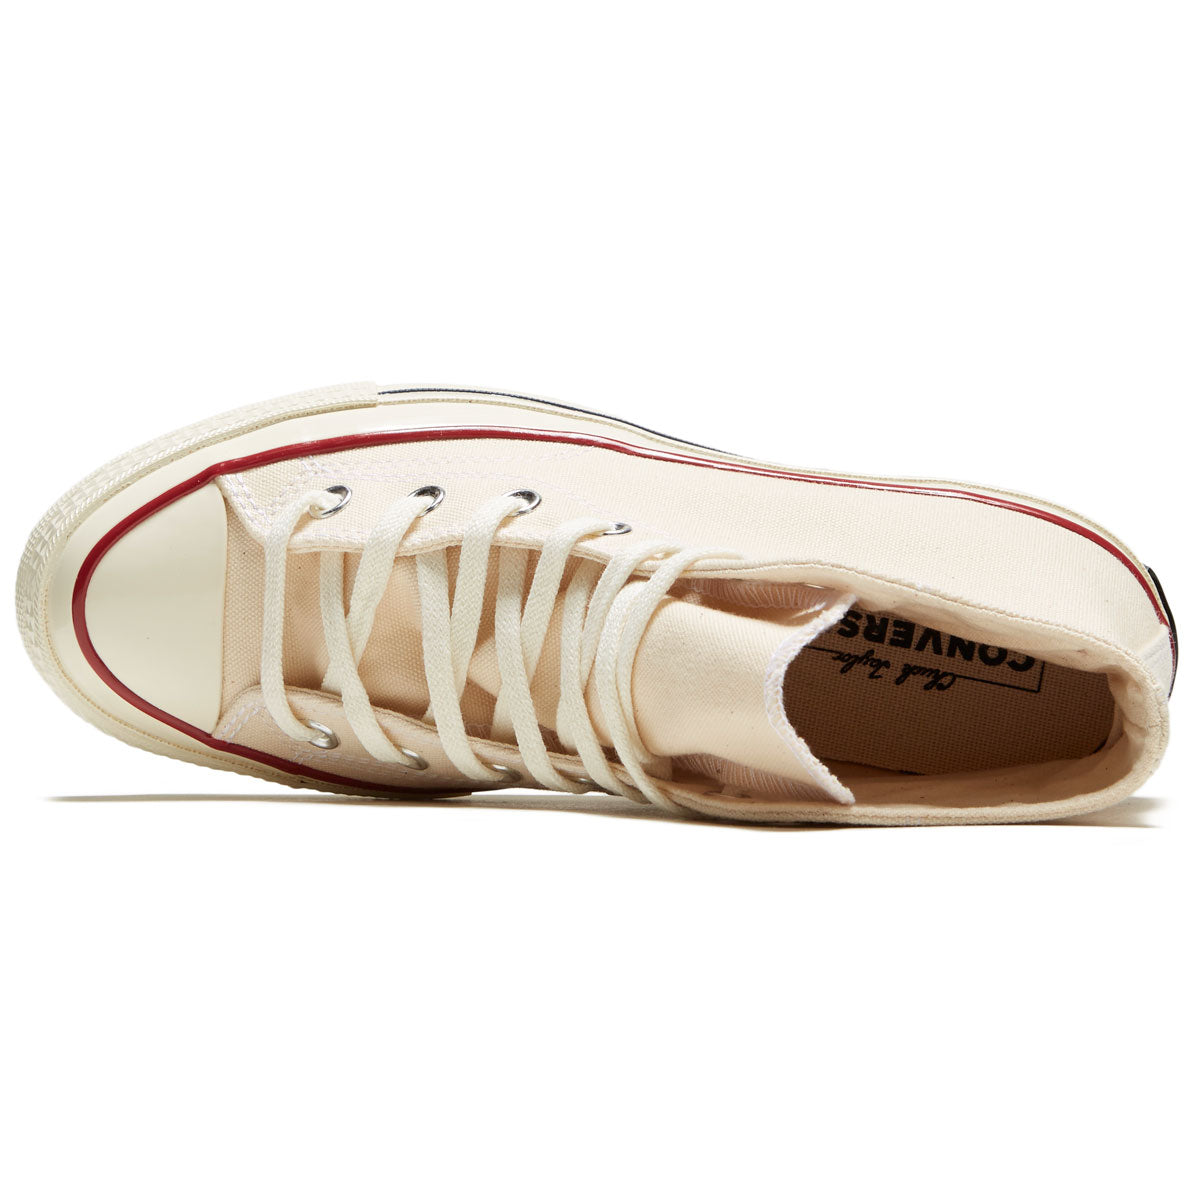 Converse Chuck 70 Hi Shoes - Parchment/Garnet/Egret image 3